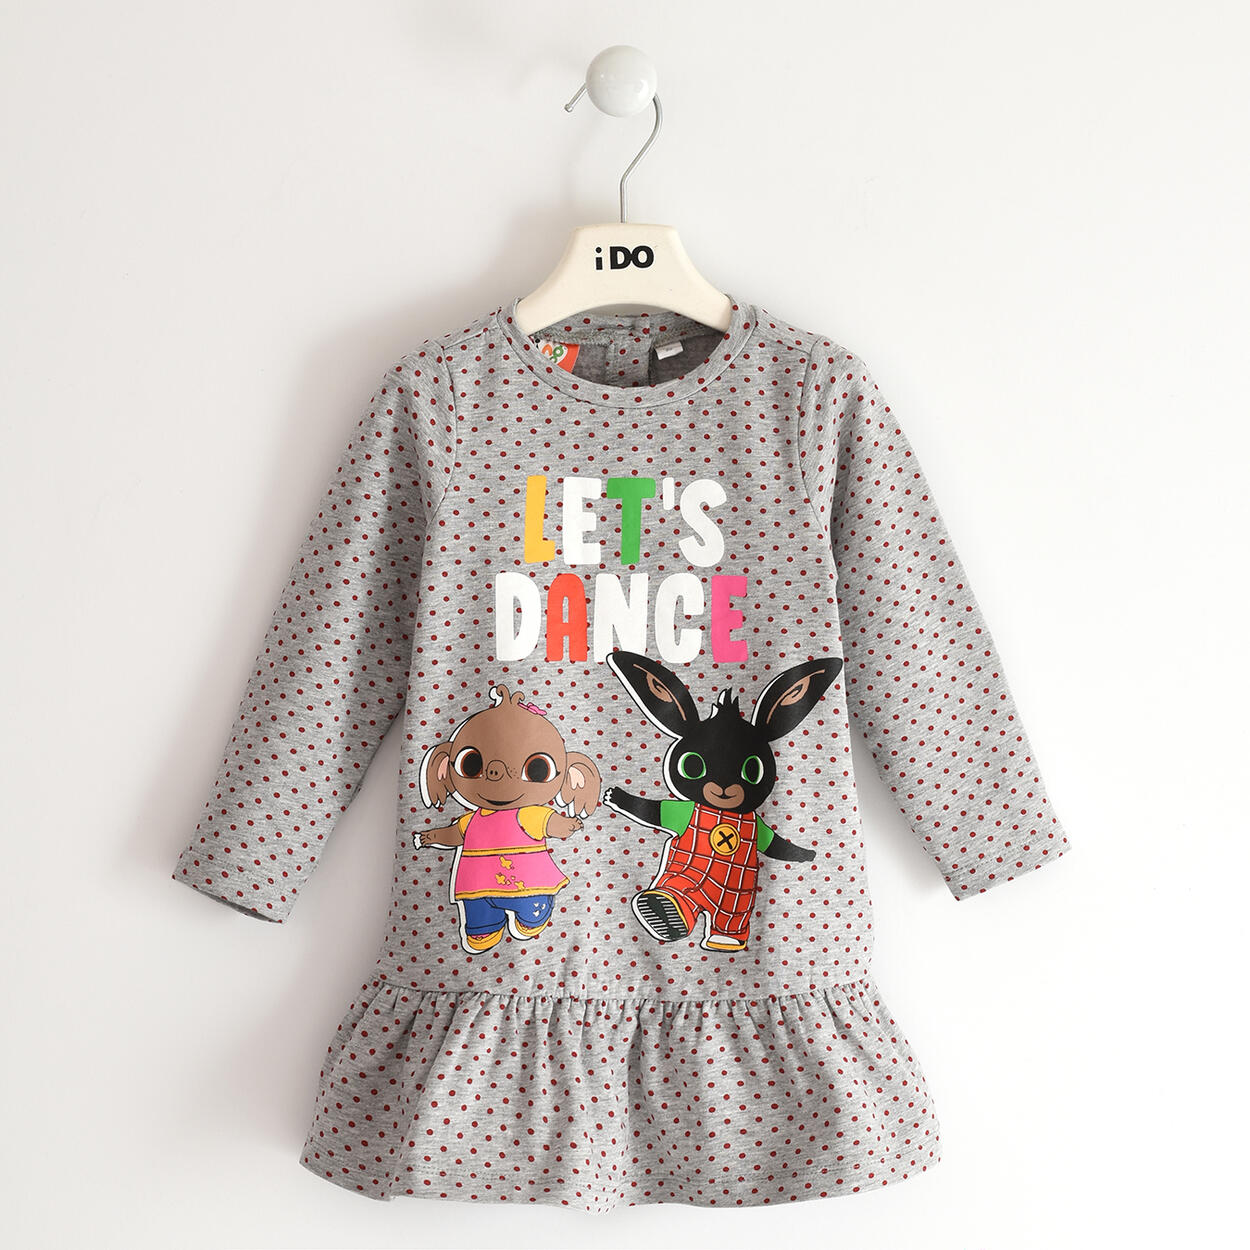 Vestito bambina capsule Bing - da 12 mesi a 6 anni iDO